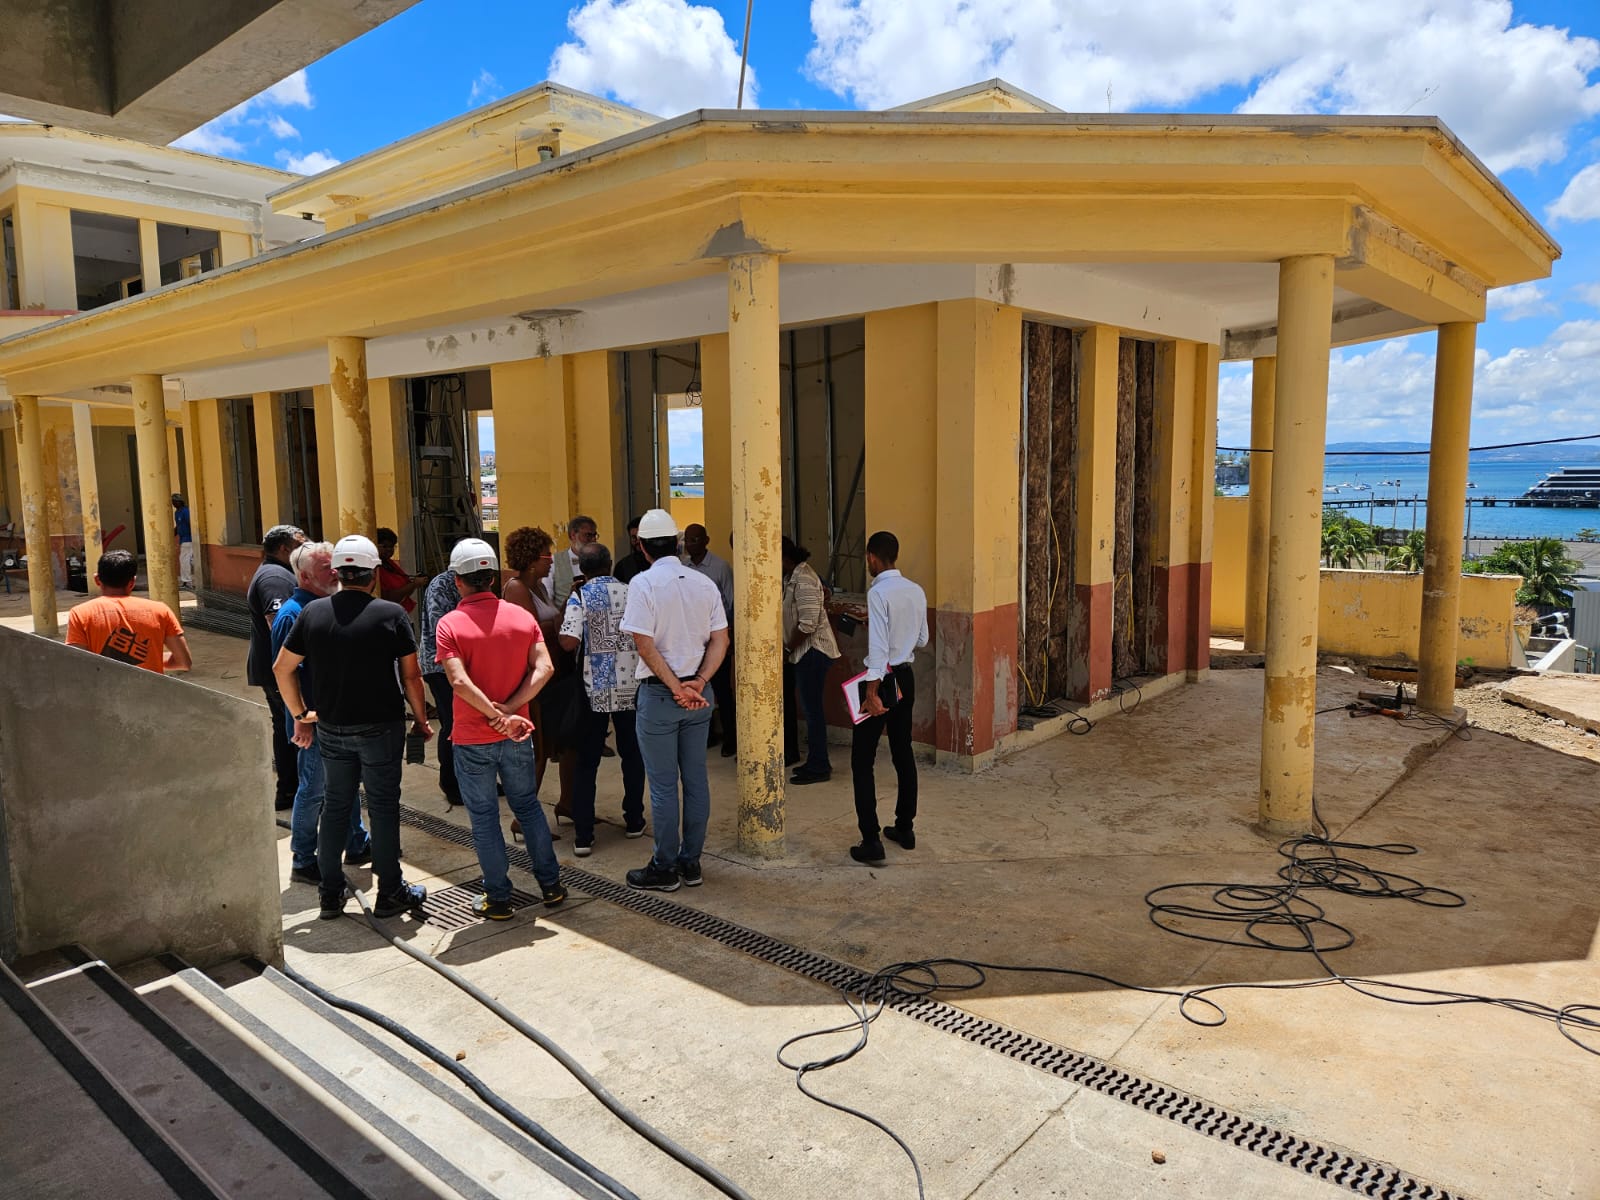     Le conservatoire d'Arts de Martinique est en chantier

